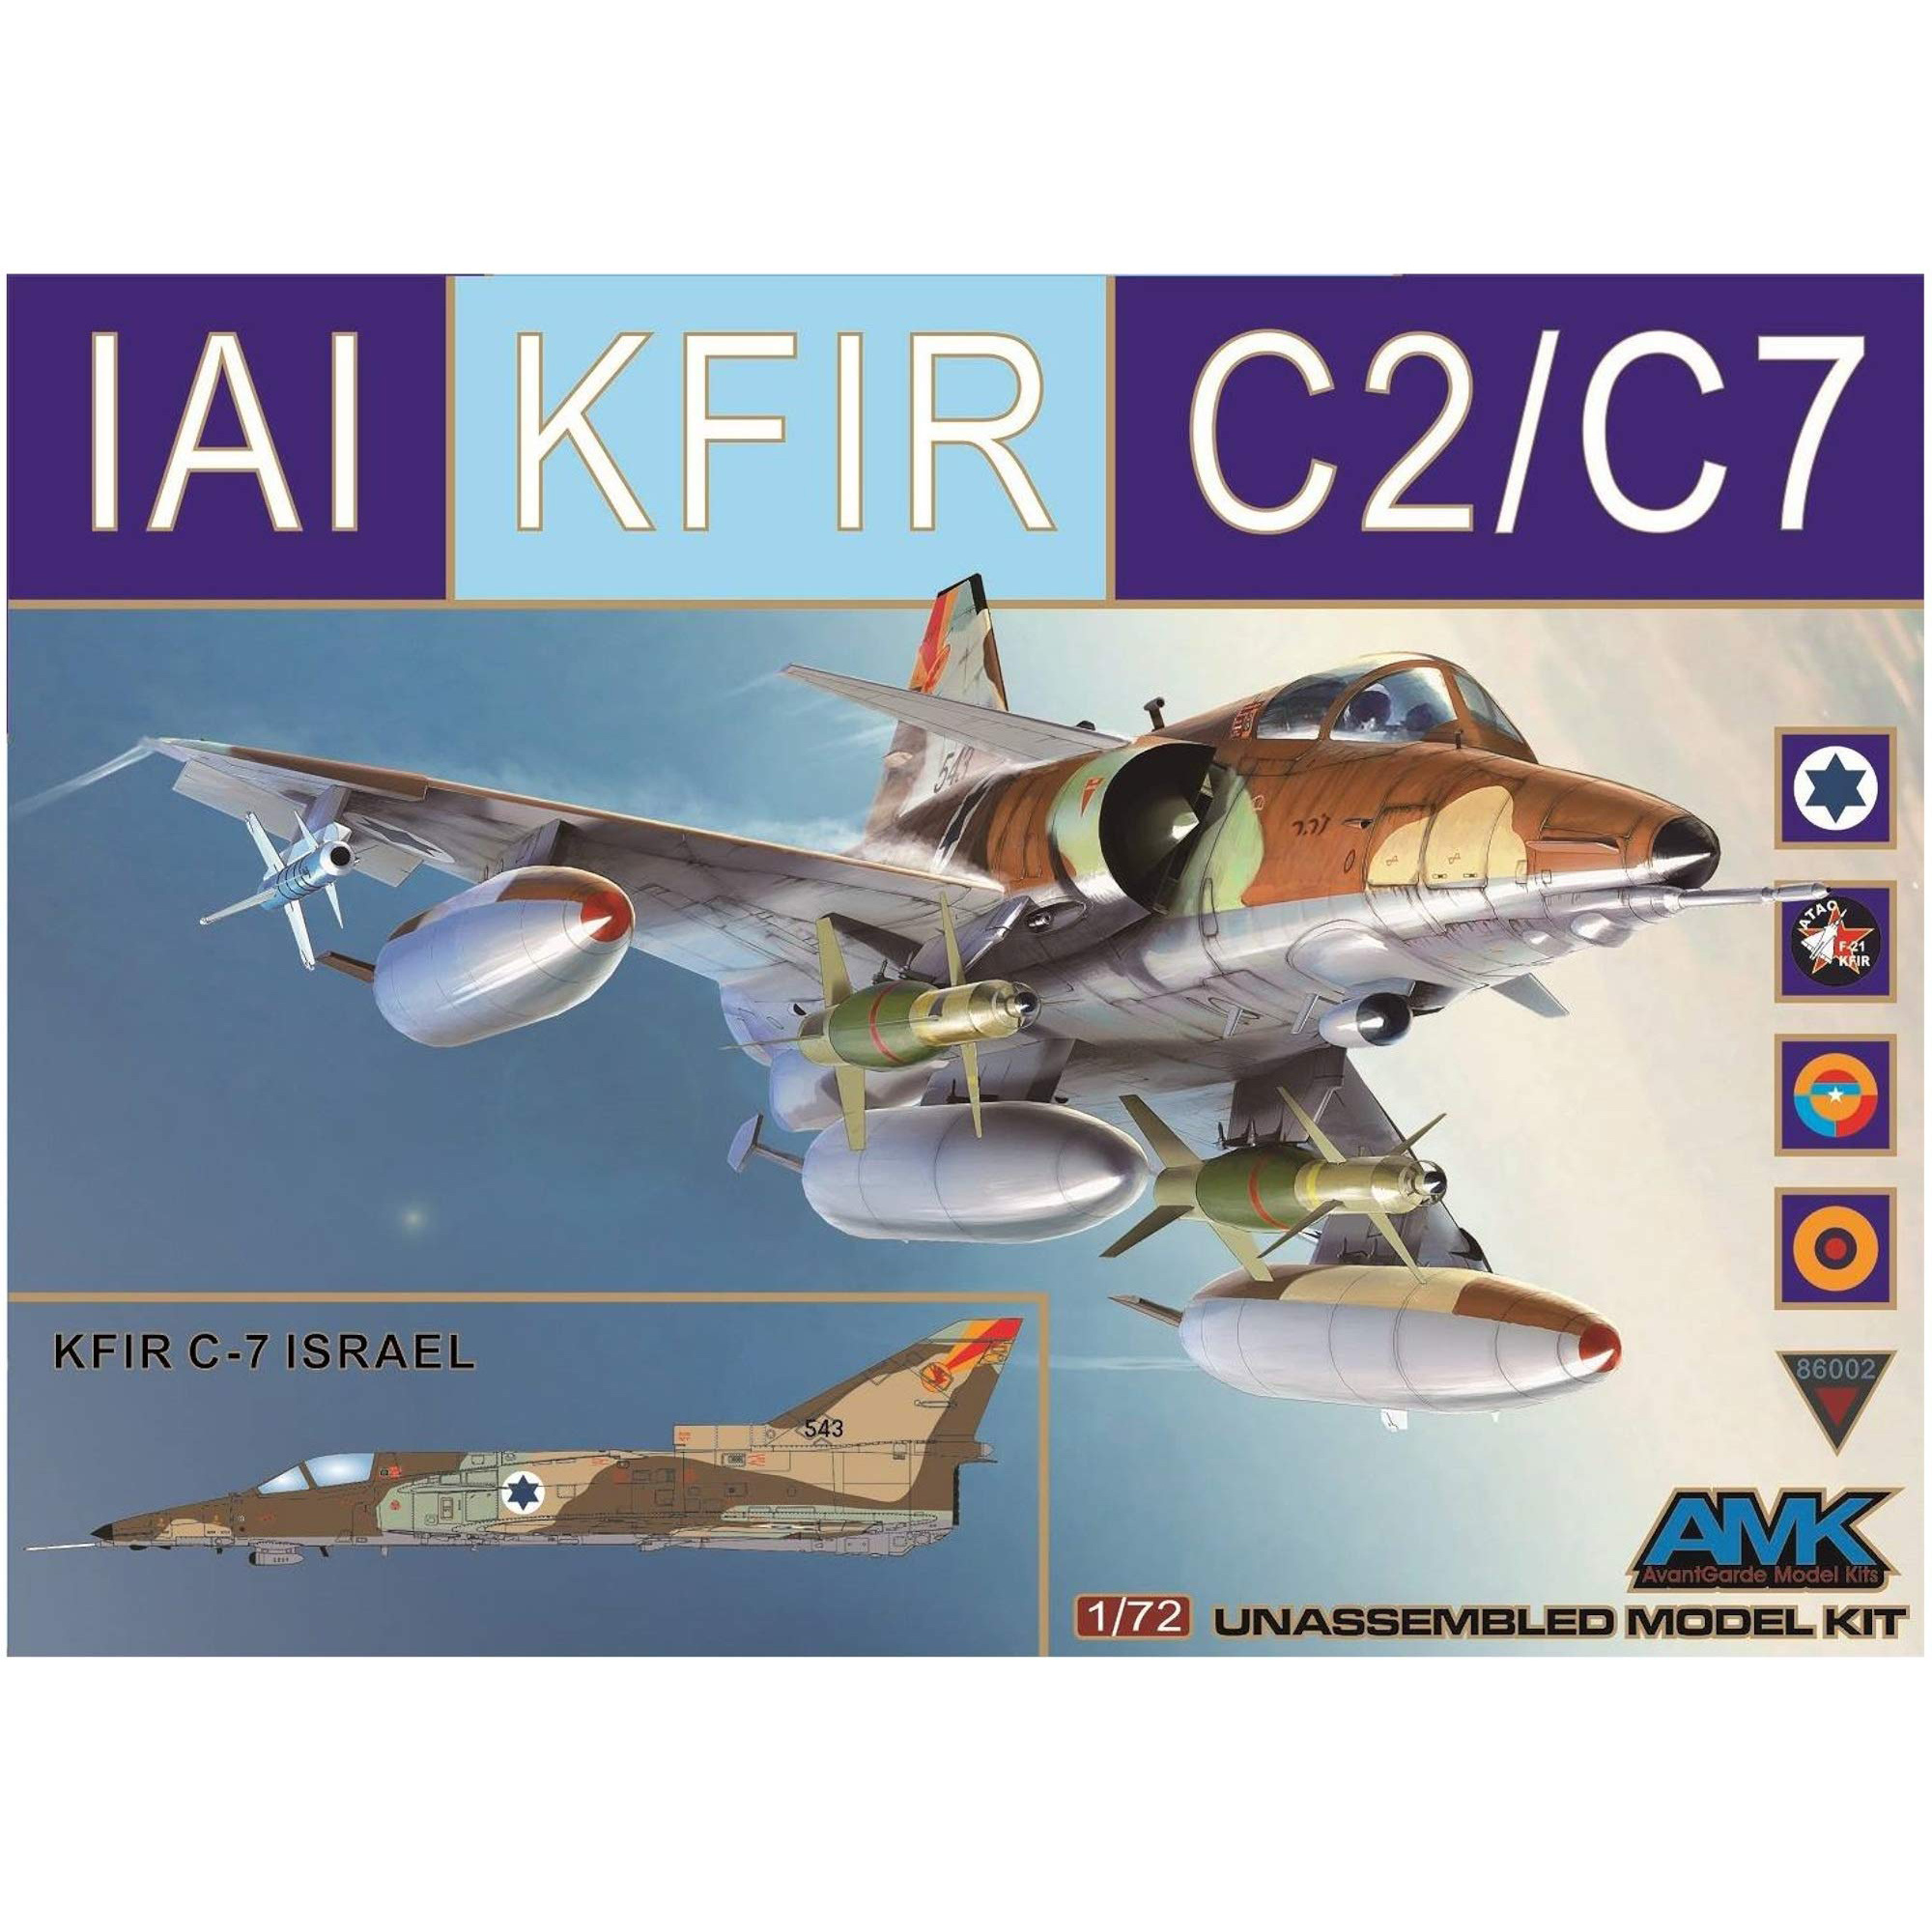 86002 AMK 1/72 Kfir C-2/C-7 IAI Aircraft